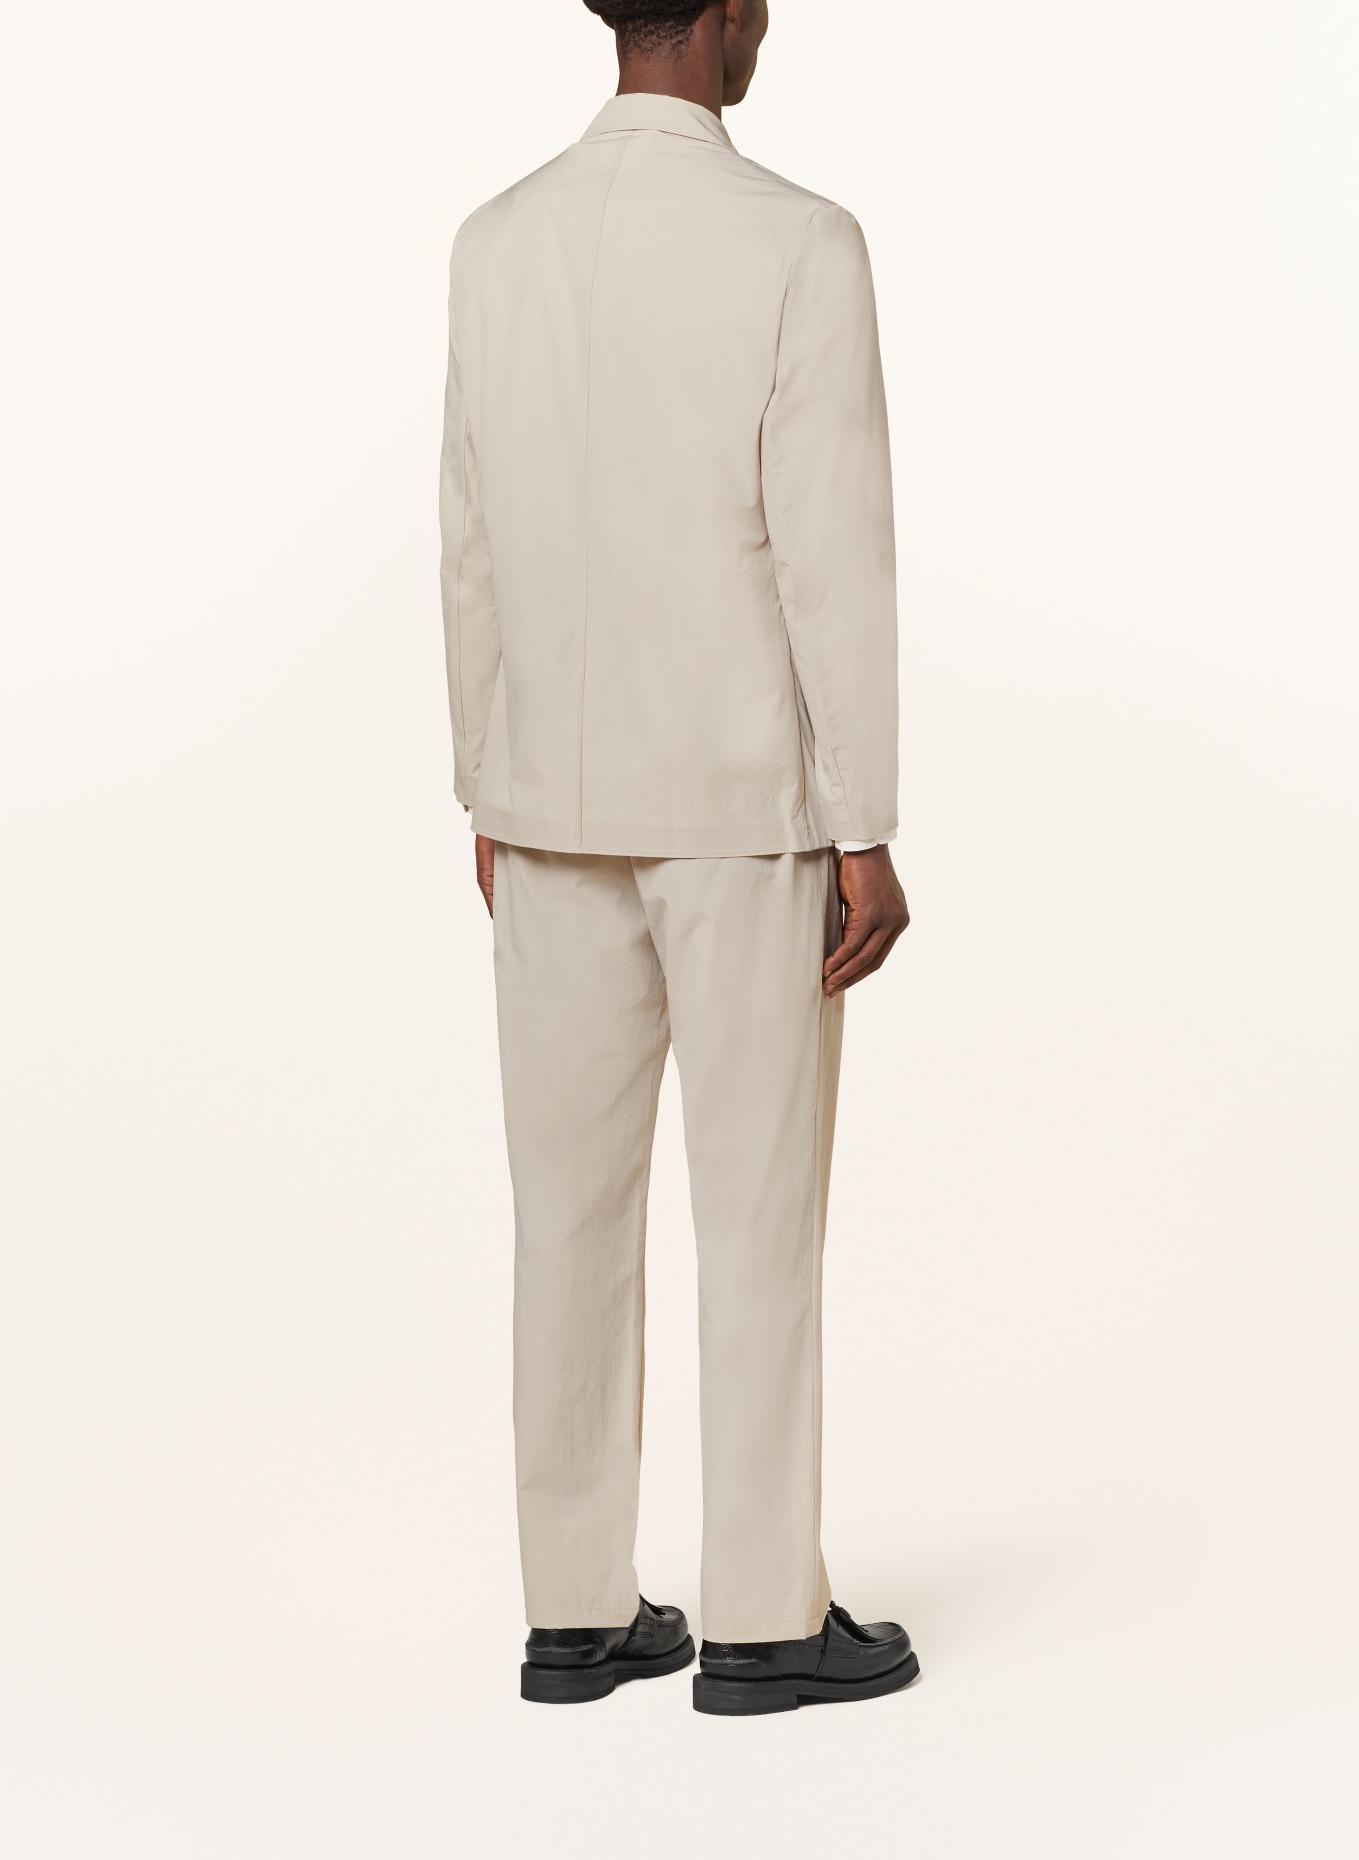 NORSE PROJECTS Suit jacket EMIL regular fit, Color: 0920 Light Khaki (Image 3)